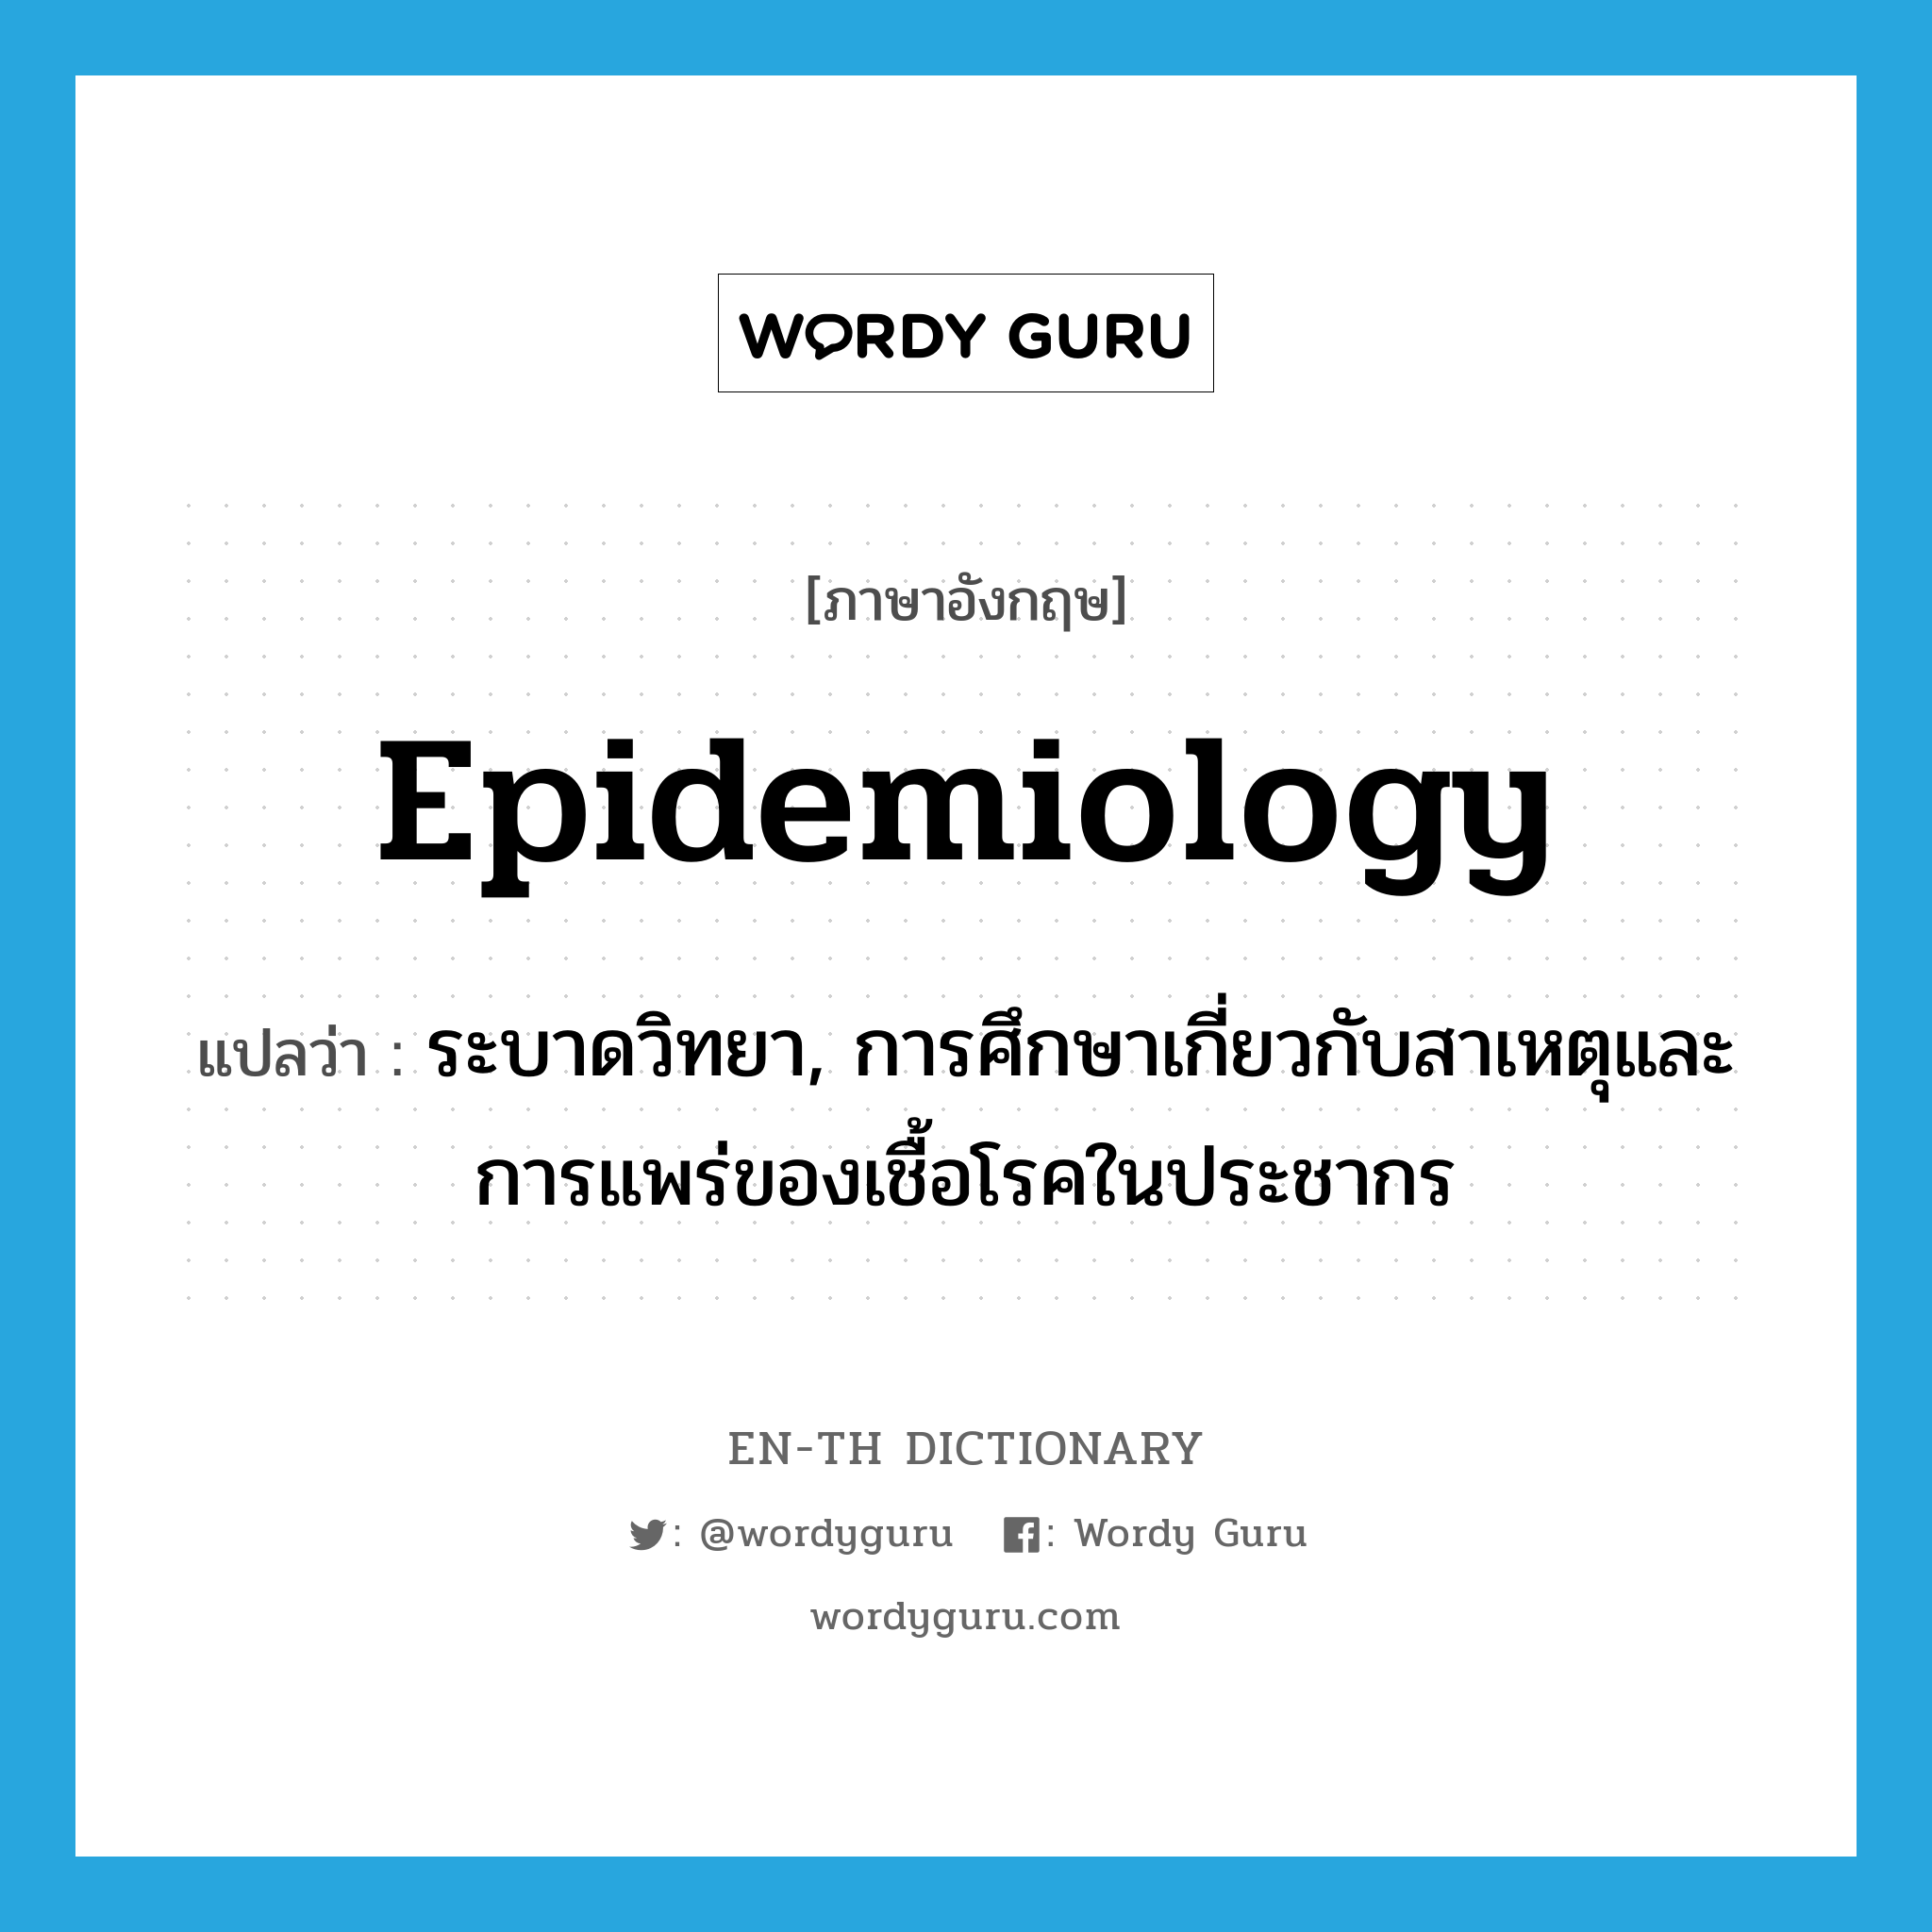 epidemiology แปลว่า?, คำศัพท์ภาษาอังกฤษ epidemiology แปลว่า ระบาดวิทยา, การศึกษาเกี่ยวกับสาเหตุและการแพร่ของเชื้อโรคในประชากร ประเภท N หมวด N